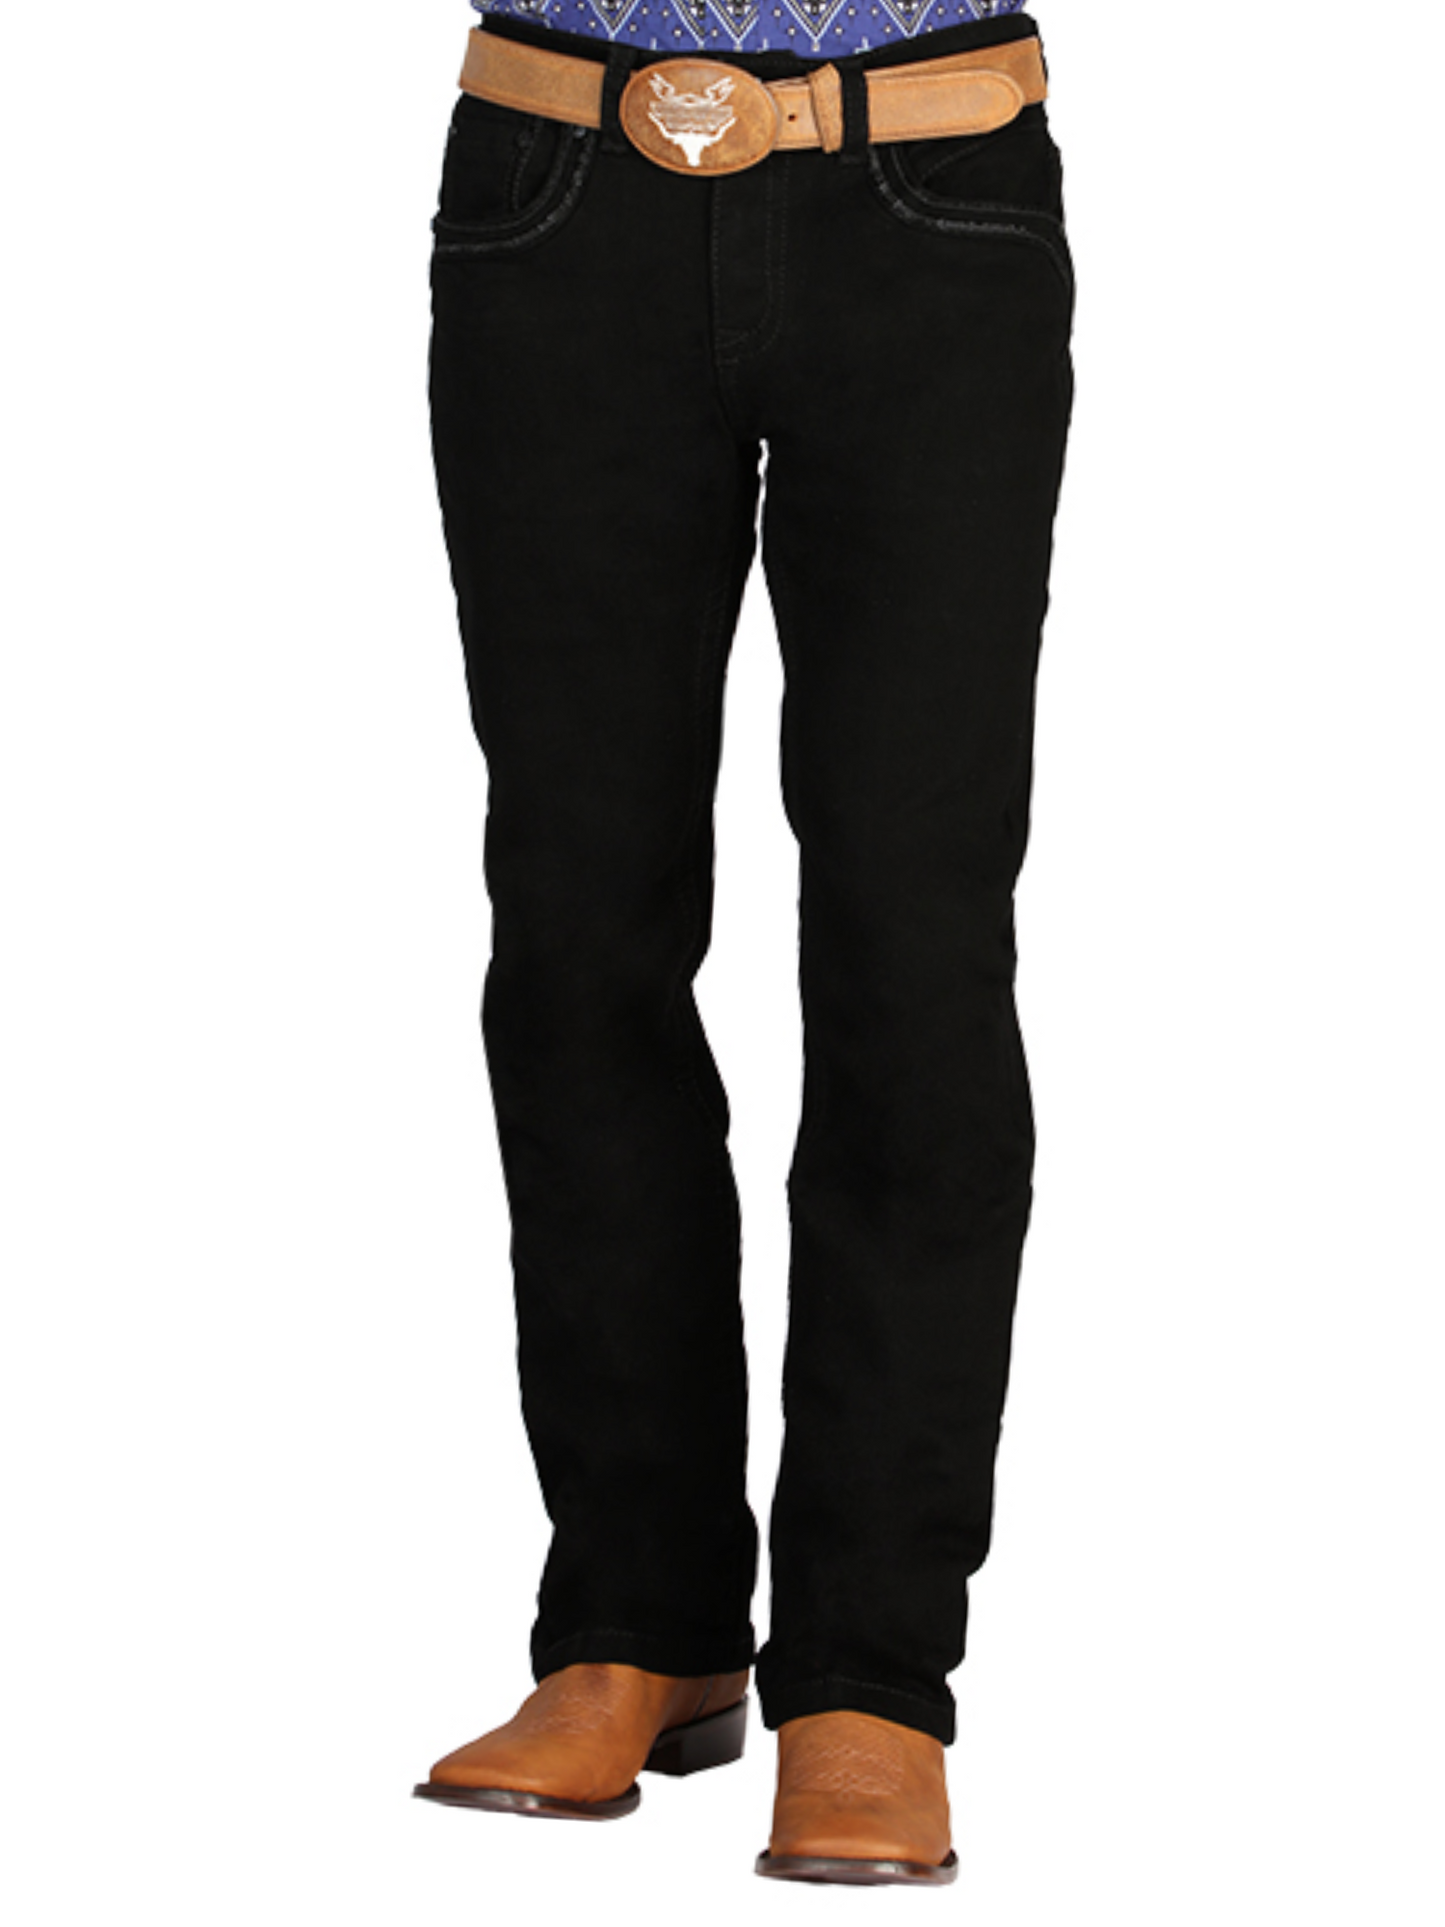 Black Boot Cut Denim Jeans for Men 'Centenario' - ID: 44837 Denim Jeans Centenario